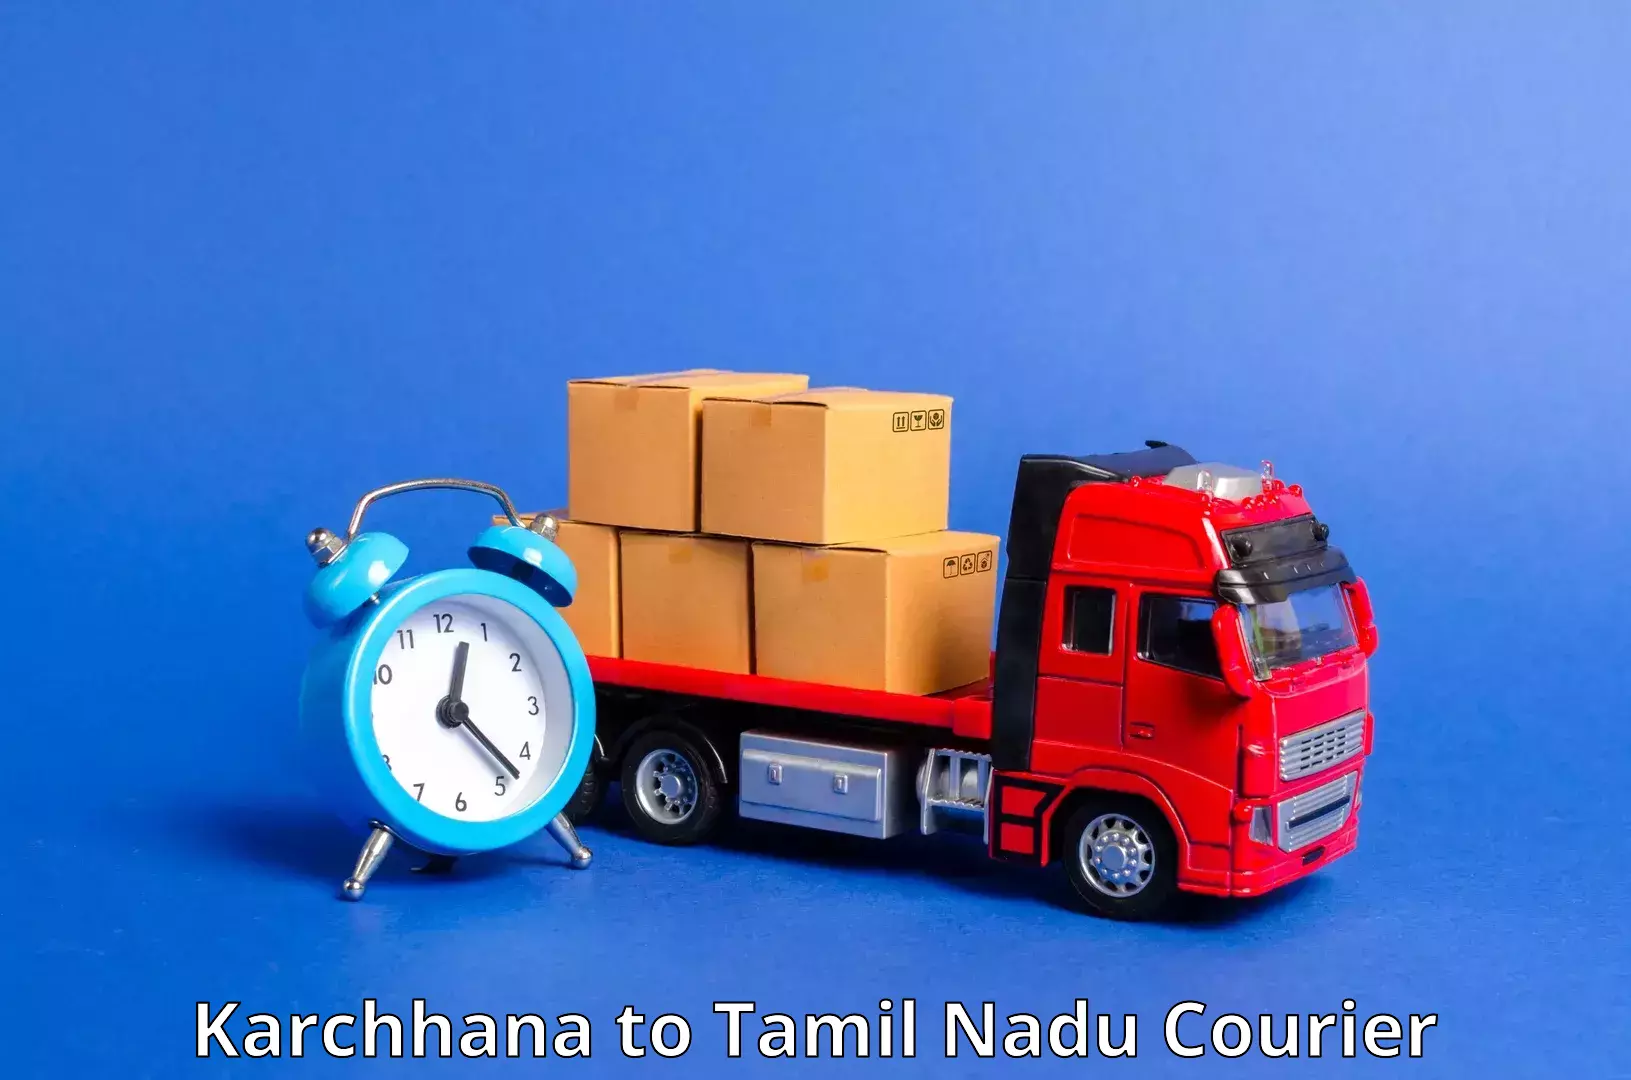 Cargo delivery service Karchhana to Vadipatti